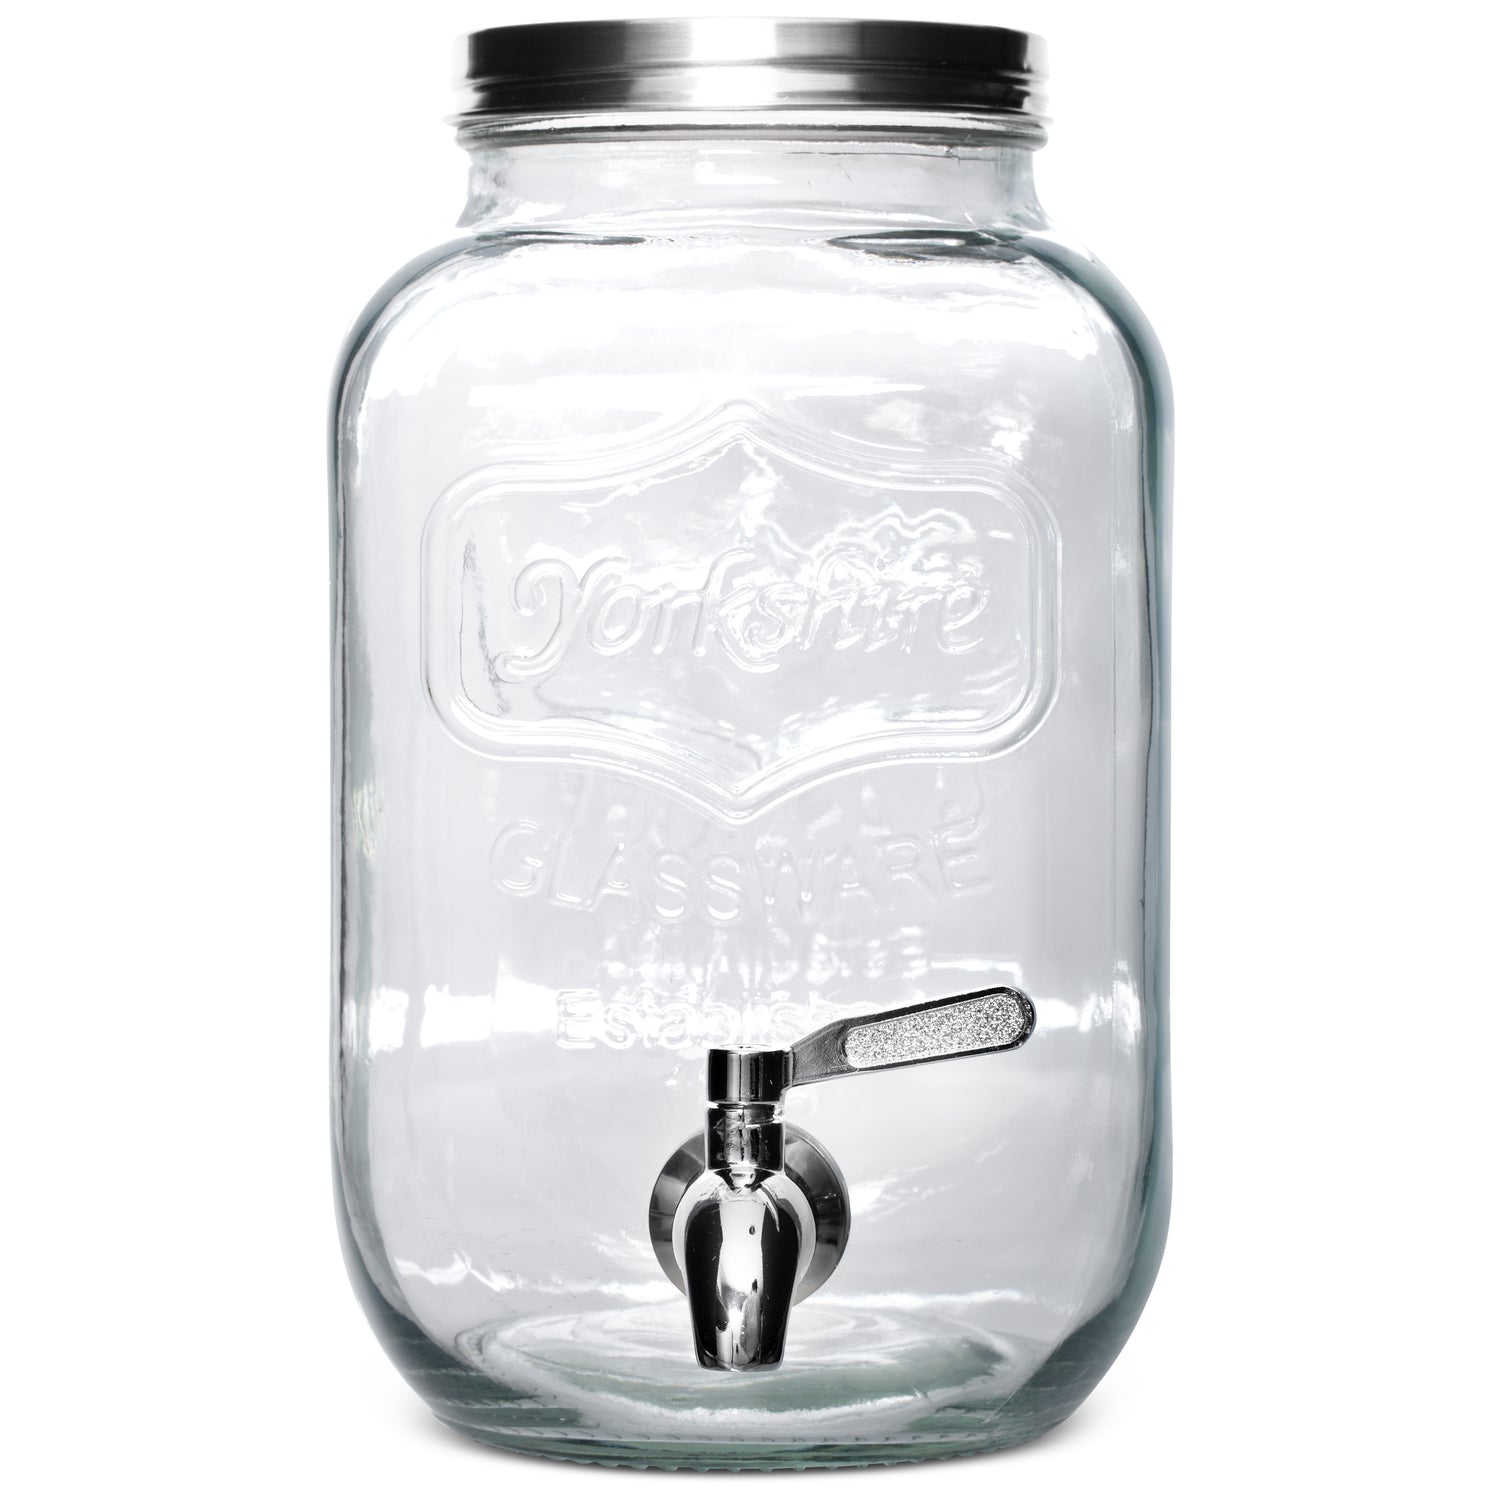 Pilsen Mouth Blown Glass Beverage Dispenser - texxture 6461250